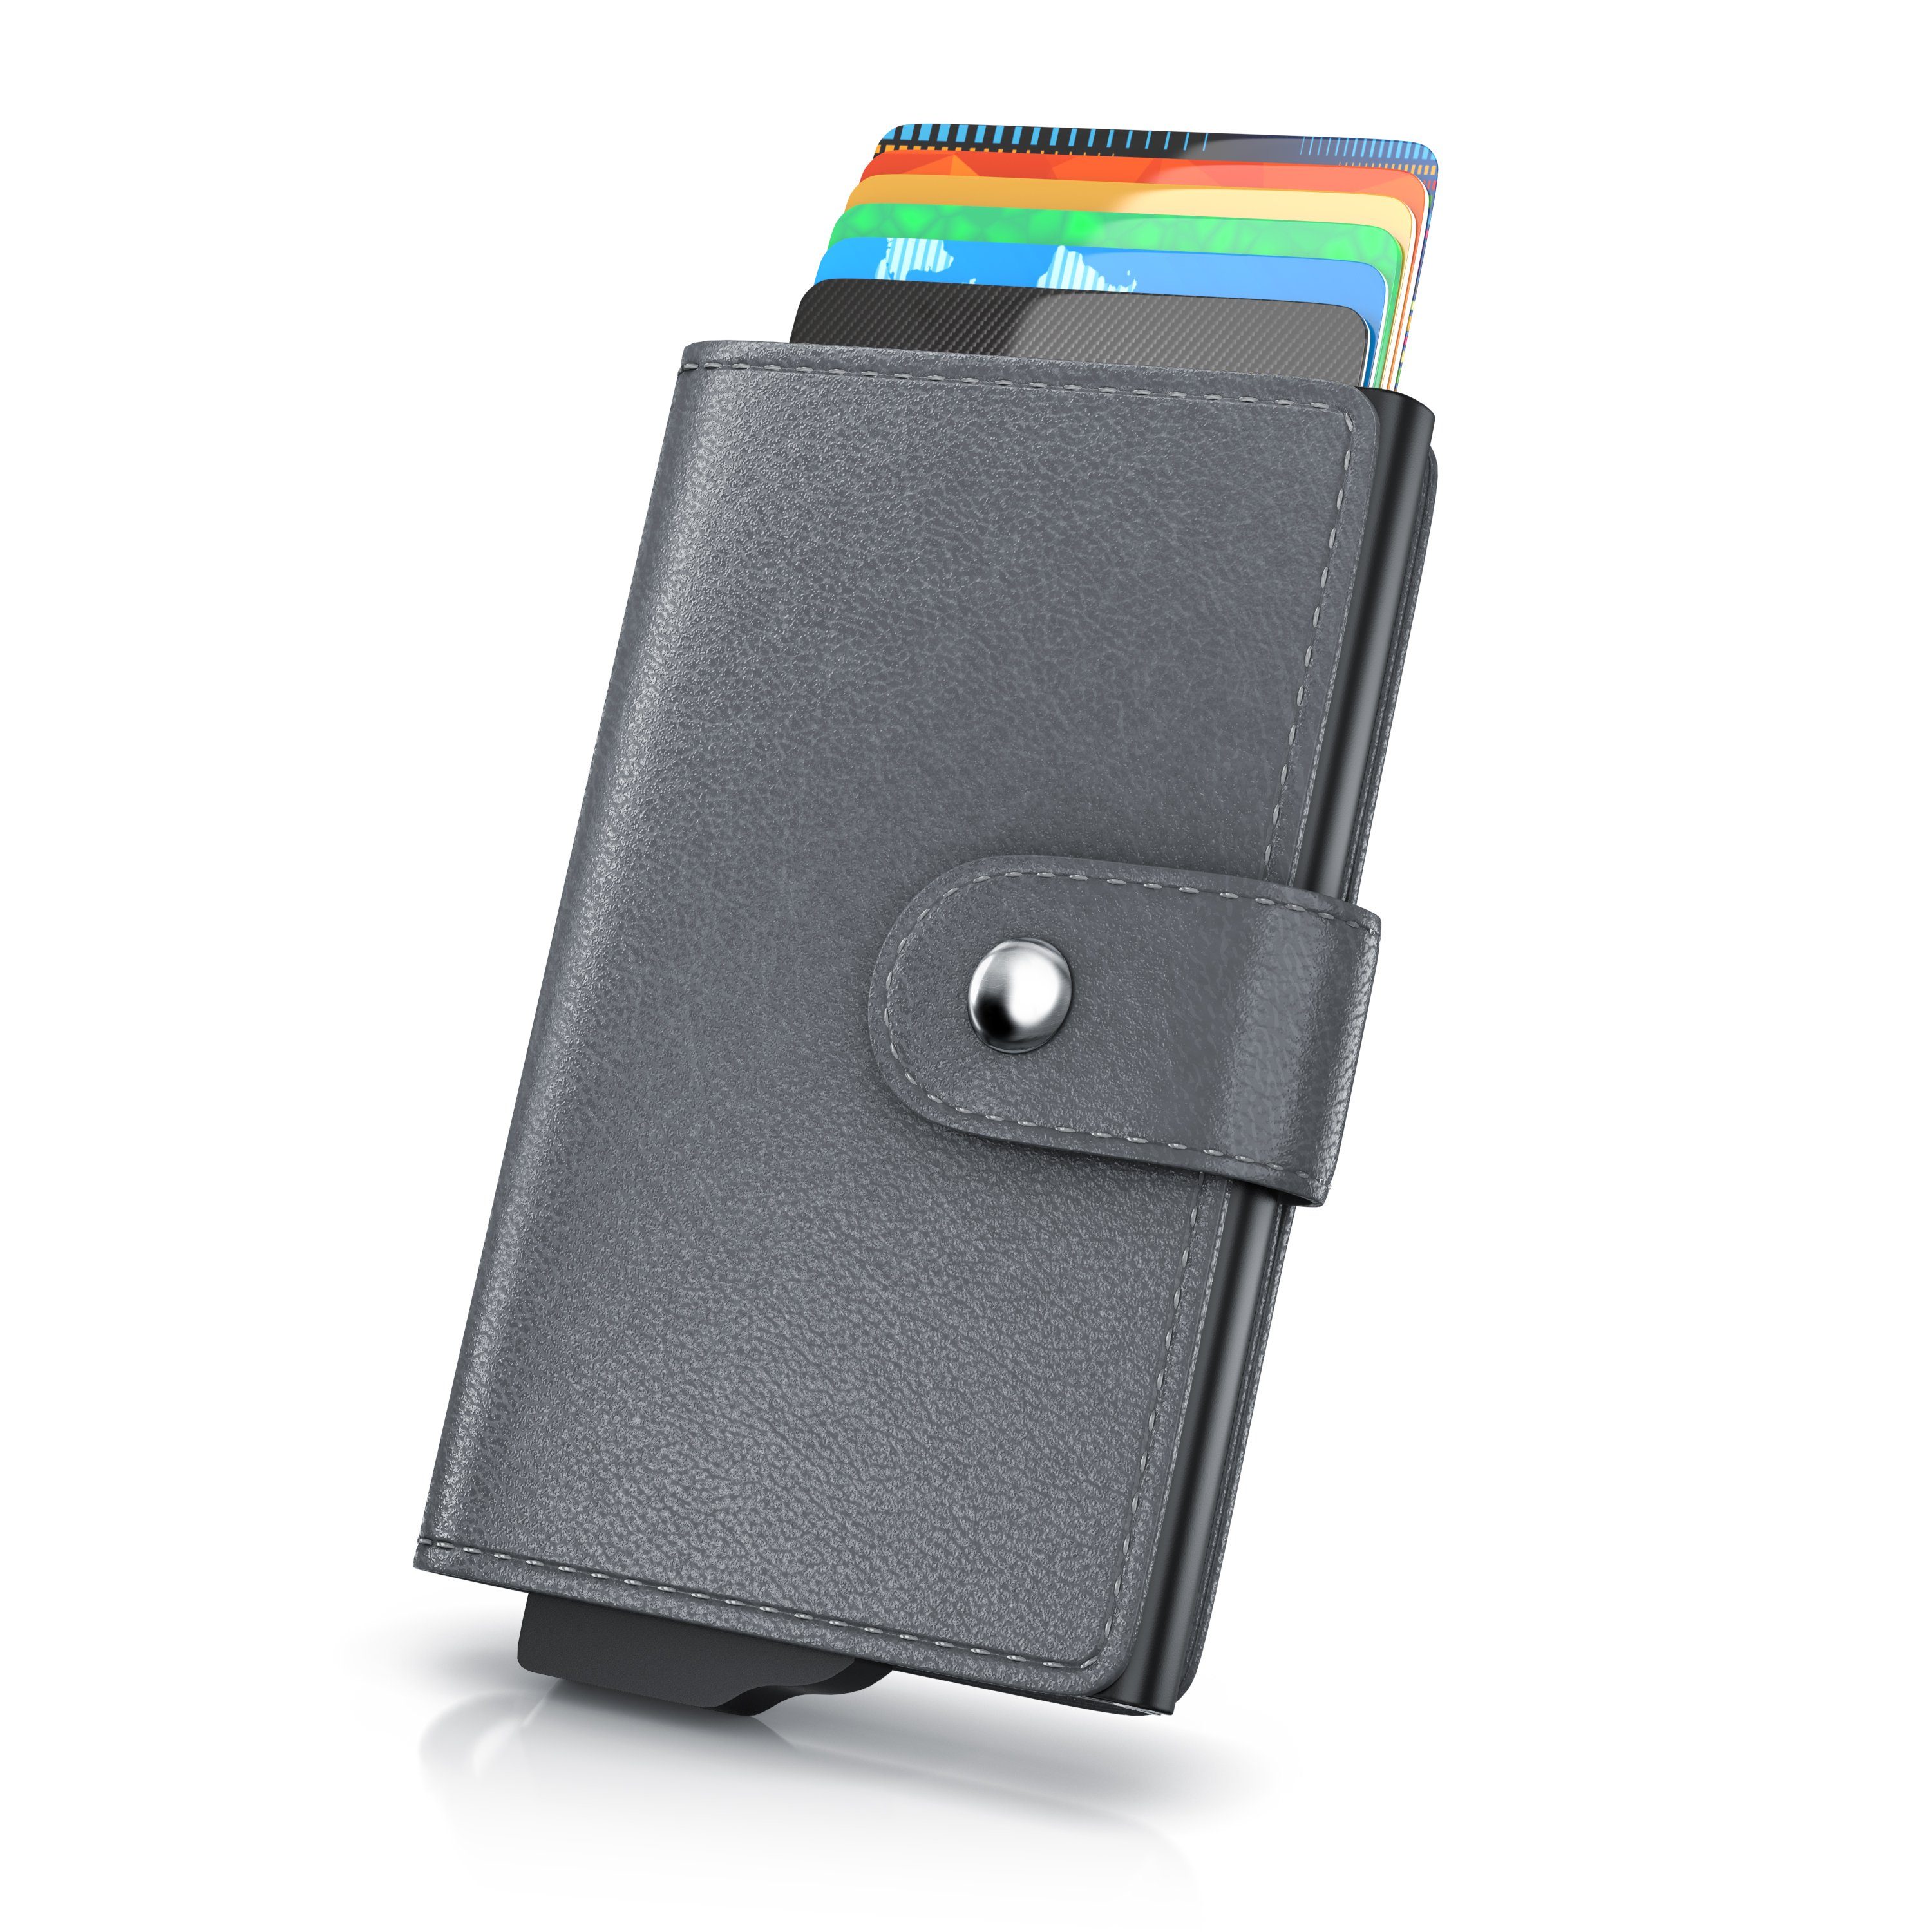 Aplic Kartenetui, NFC / RFID Blocker Karten Portemonnaie, Abschirmung für max. 6 Karten